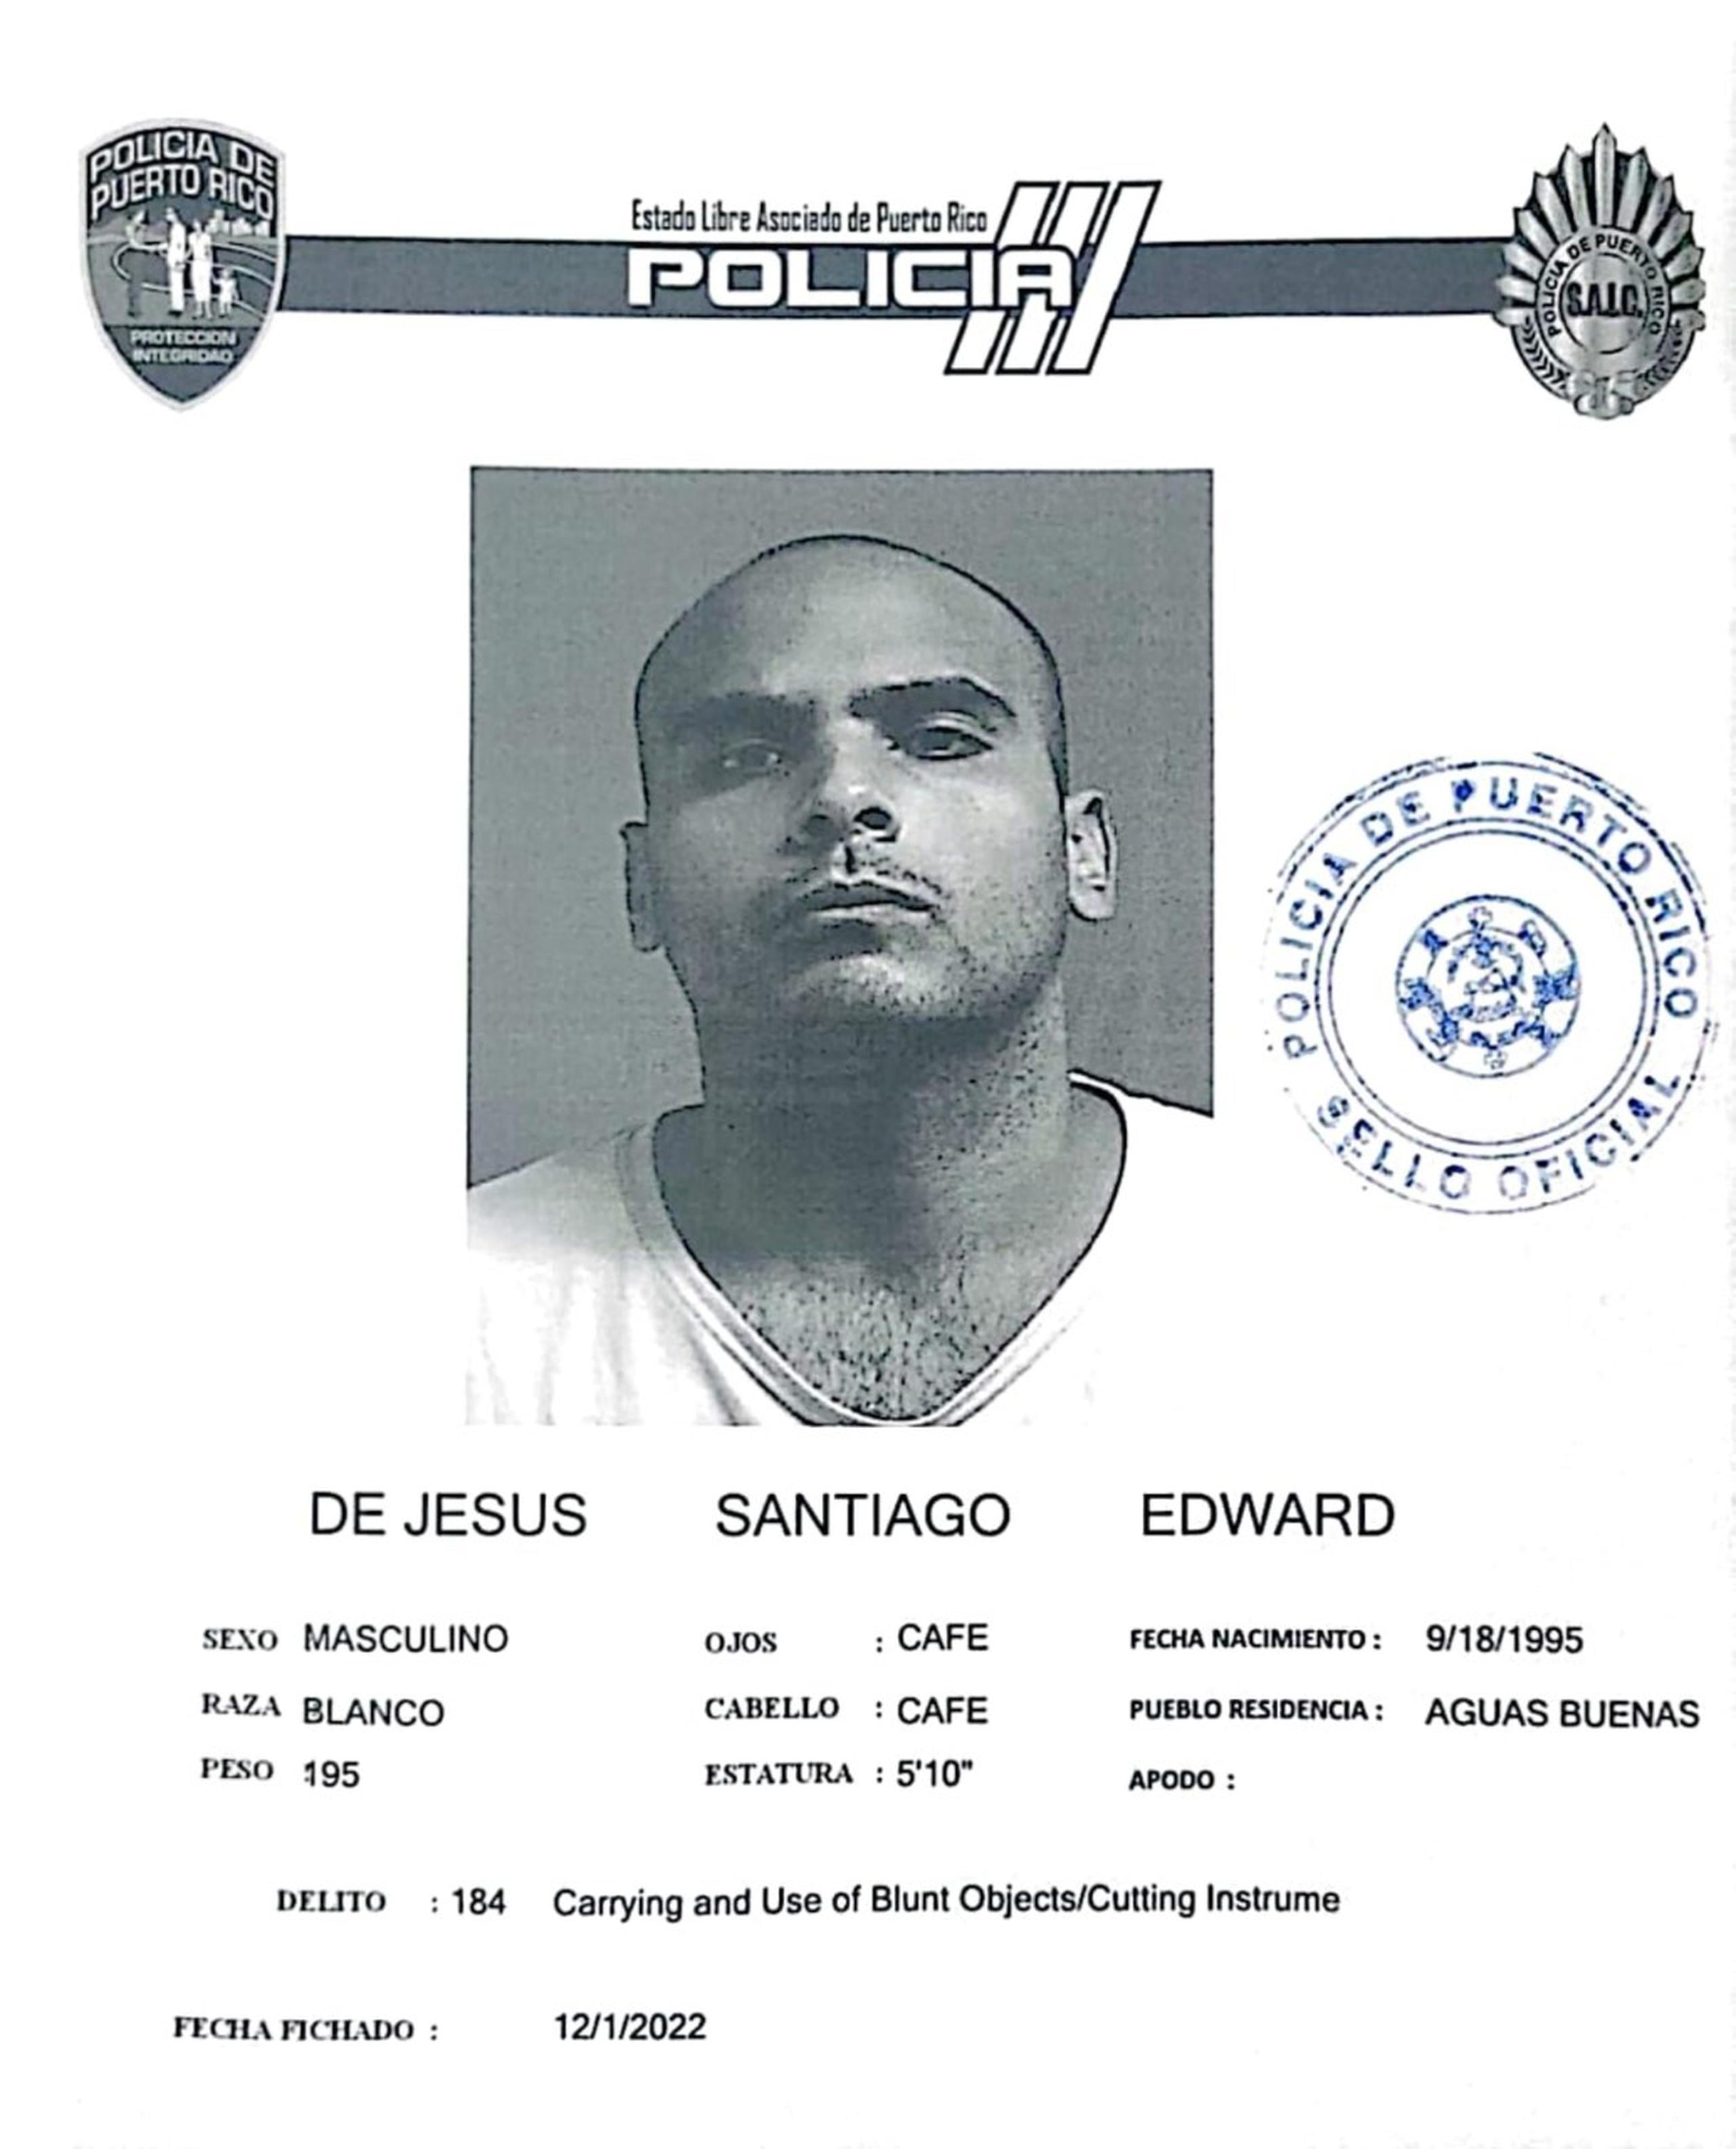 Edward De Jesús Santiago enfrenta cargos por maltrato de personas de edad avanzada y violación a la Ley de Armas.